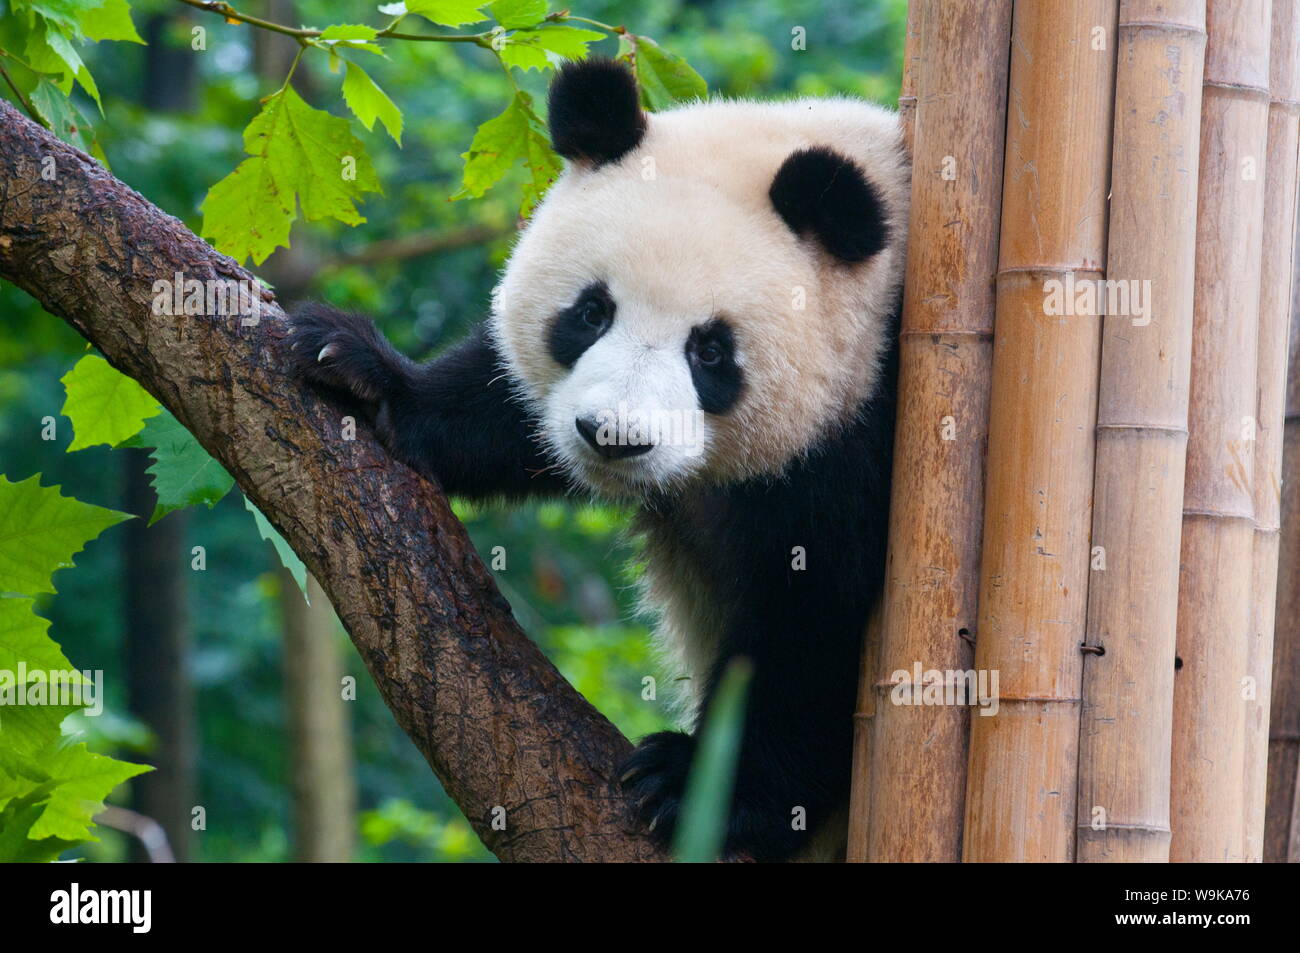 Panda géant (Ailuropoda melanoleuca) à la réserve de Panda Bear, Chengdu, Sichuan, China, Asia Banque D'Images